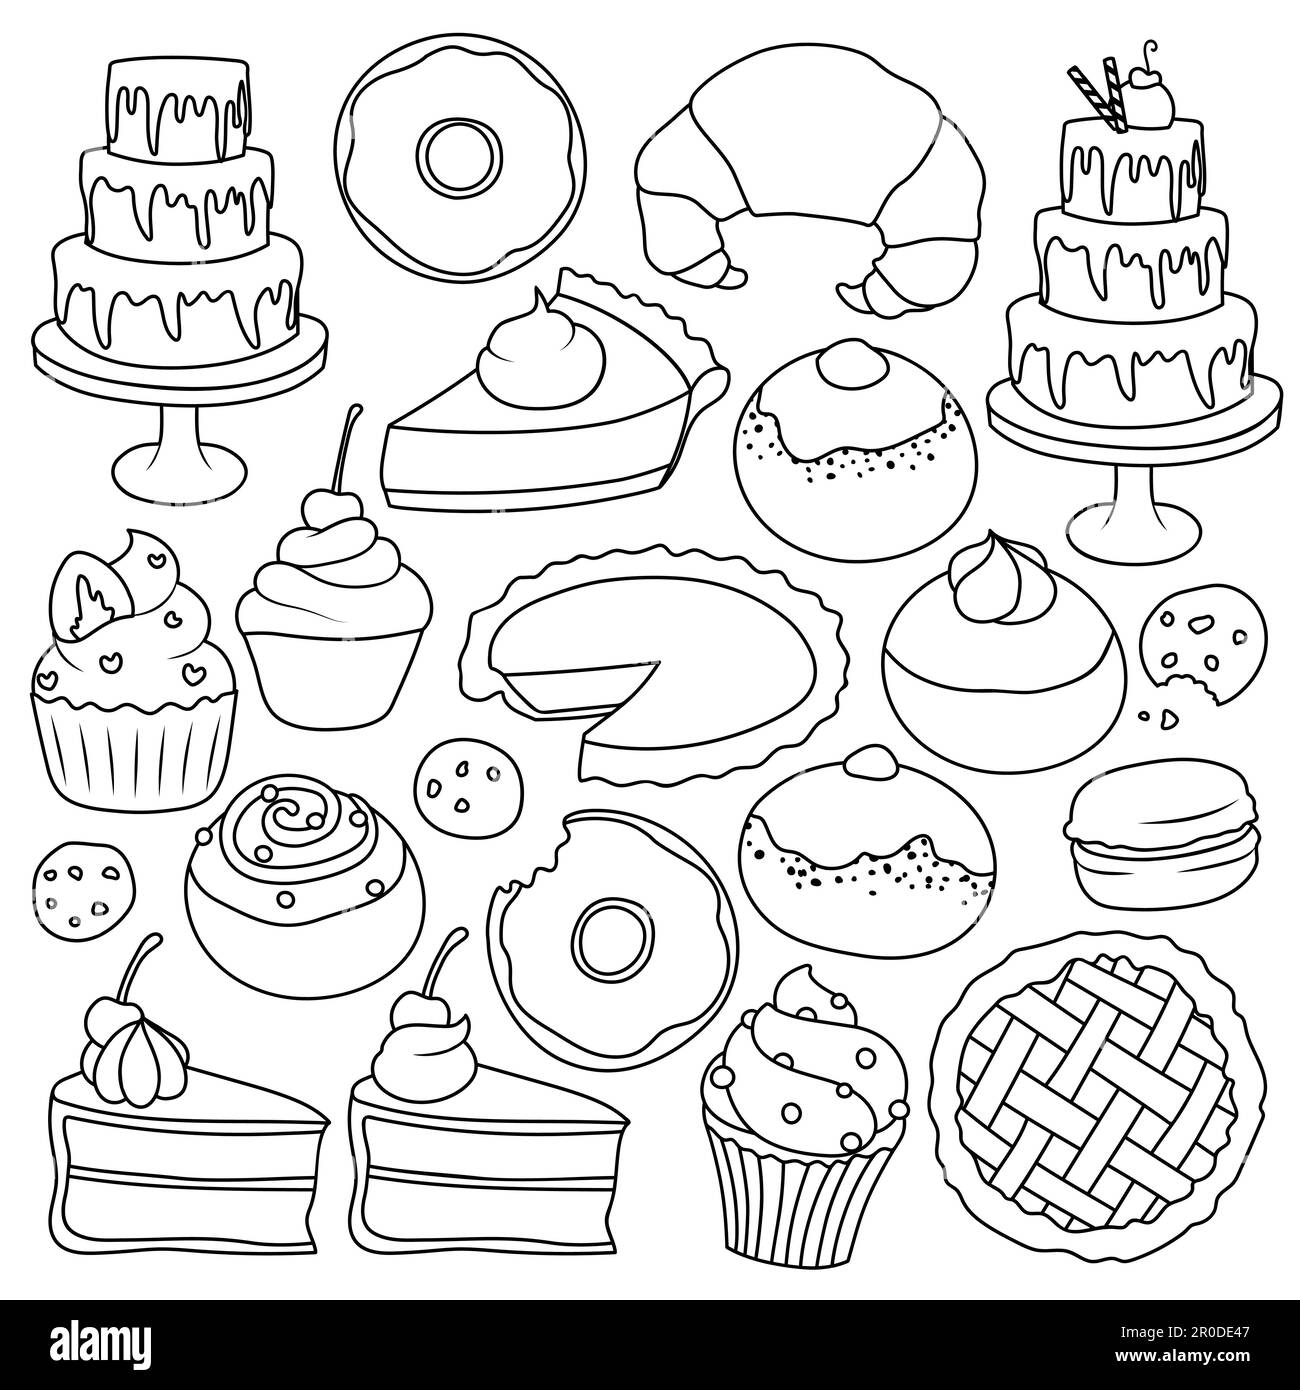 Collezione di illustrazioni cartoni animati in bianco e nero di vari dessert e dolcetti. Vettori isolati disegnati a mano. Contorni neri per la colorazione. Illustrazione Vettoriale